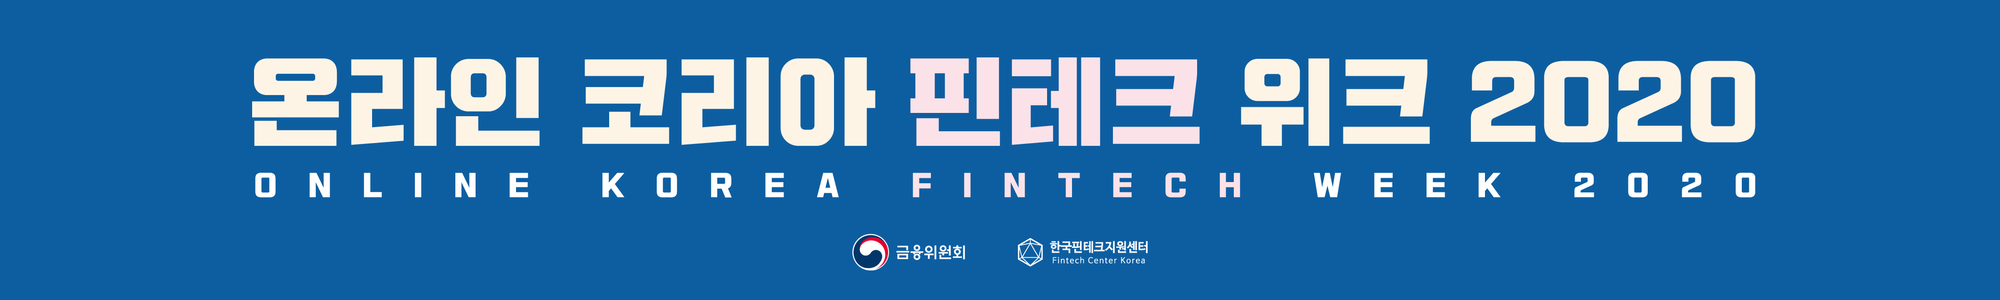 korea_fintech_week